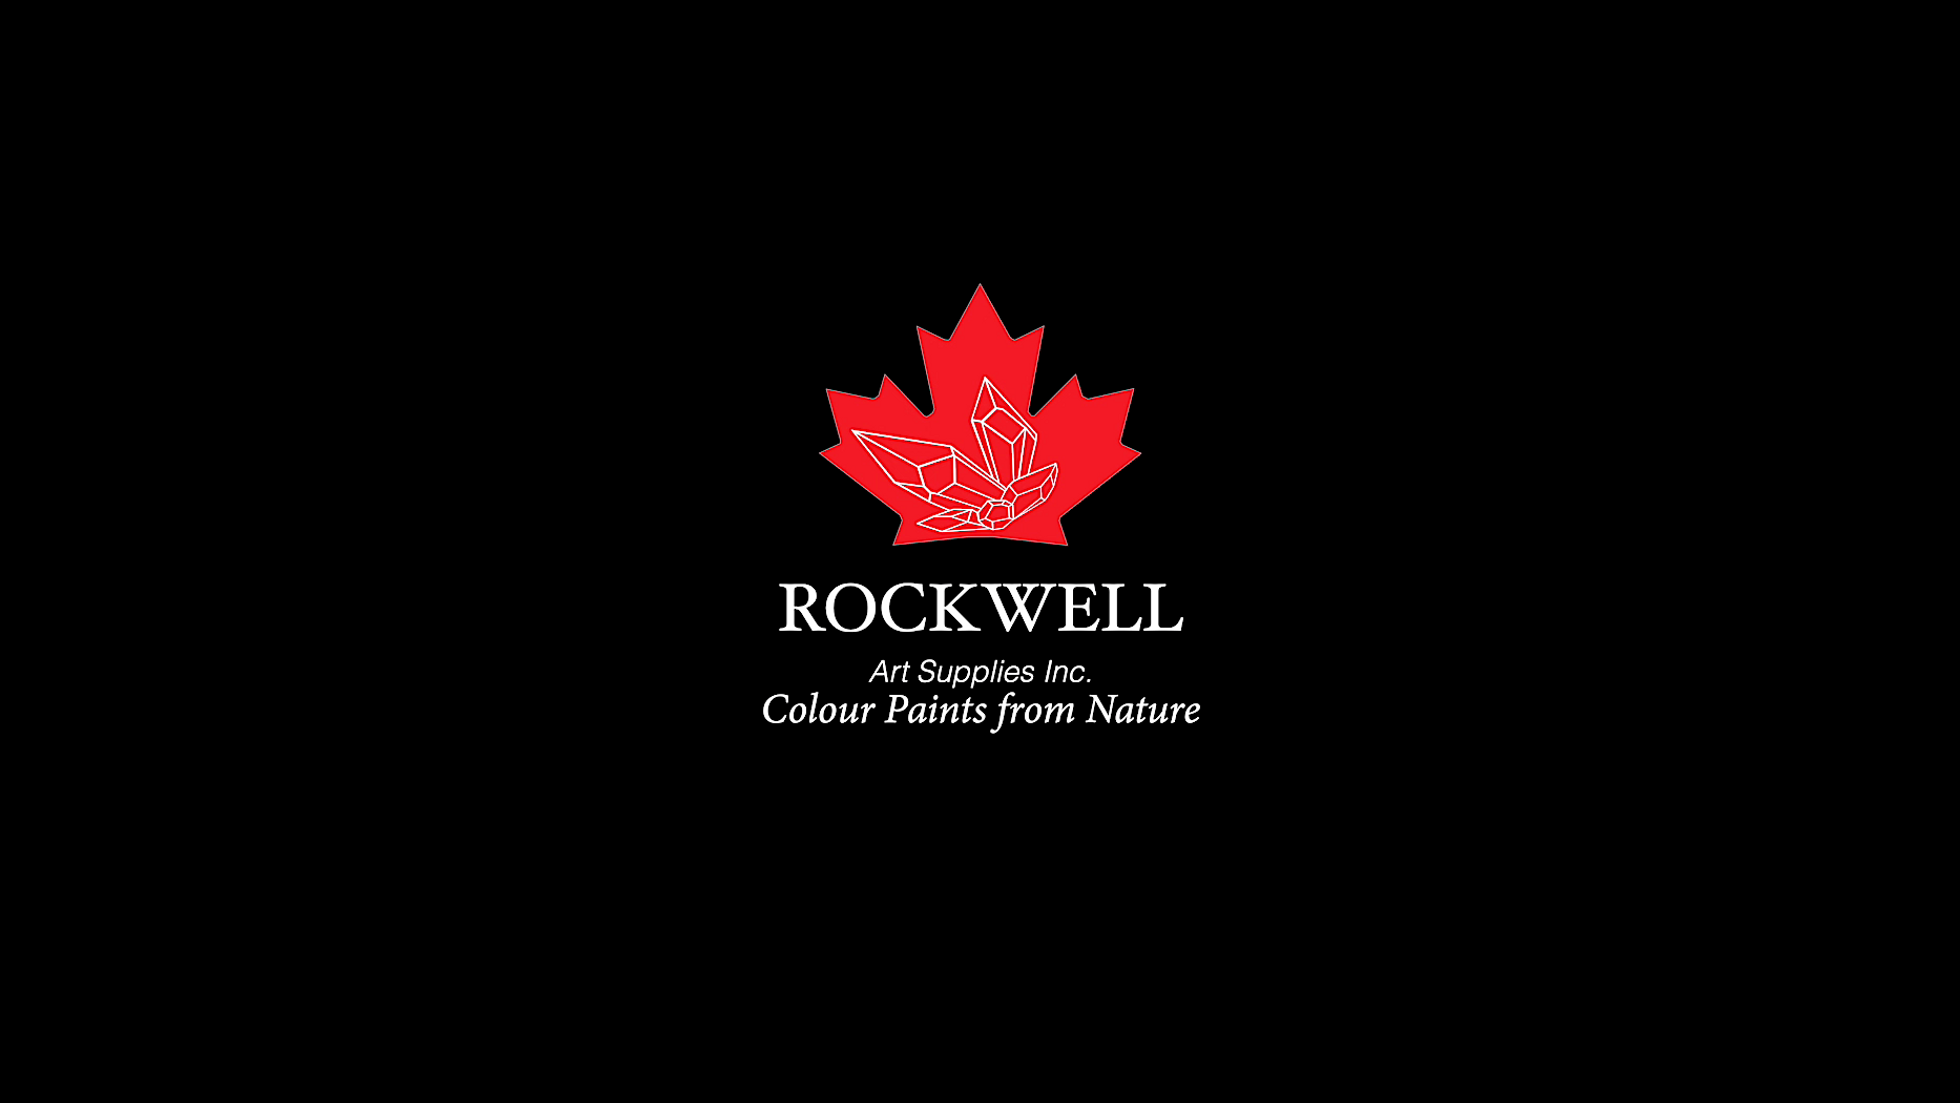 Rockwell Art Supplies Inc.